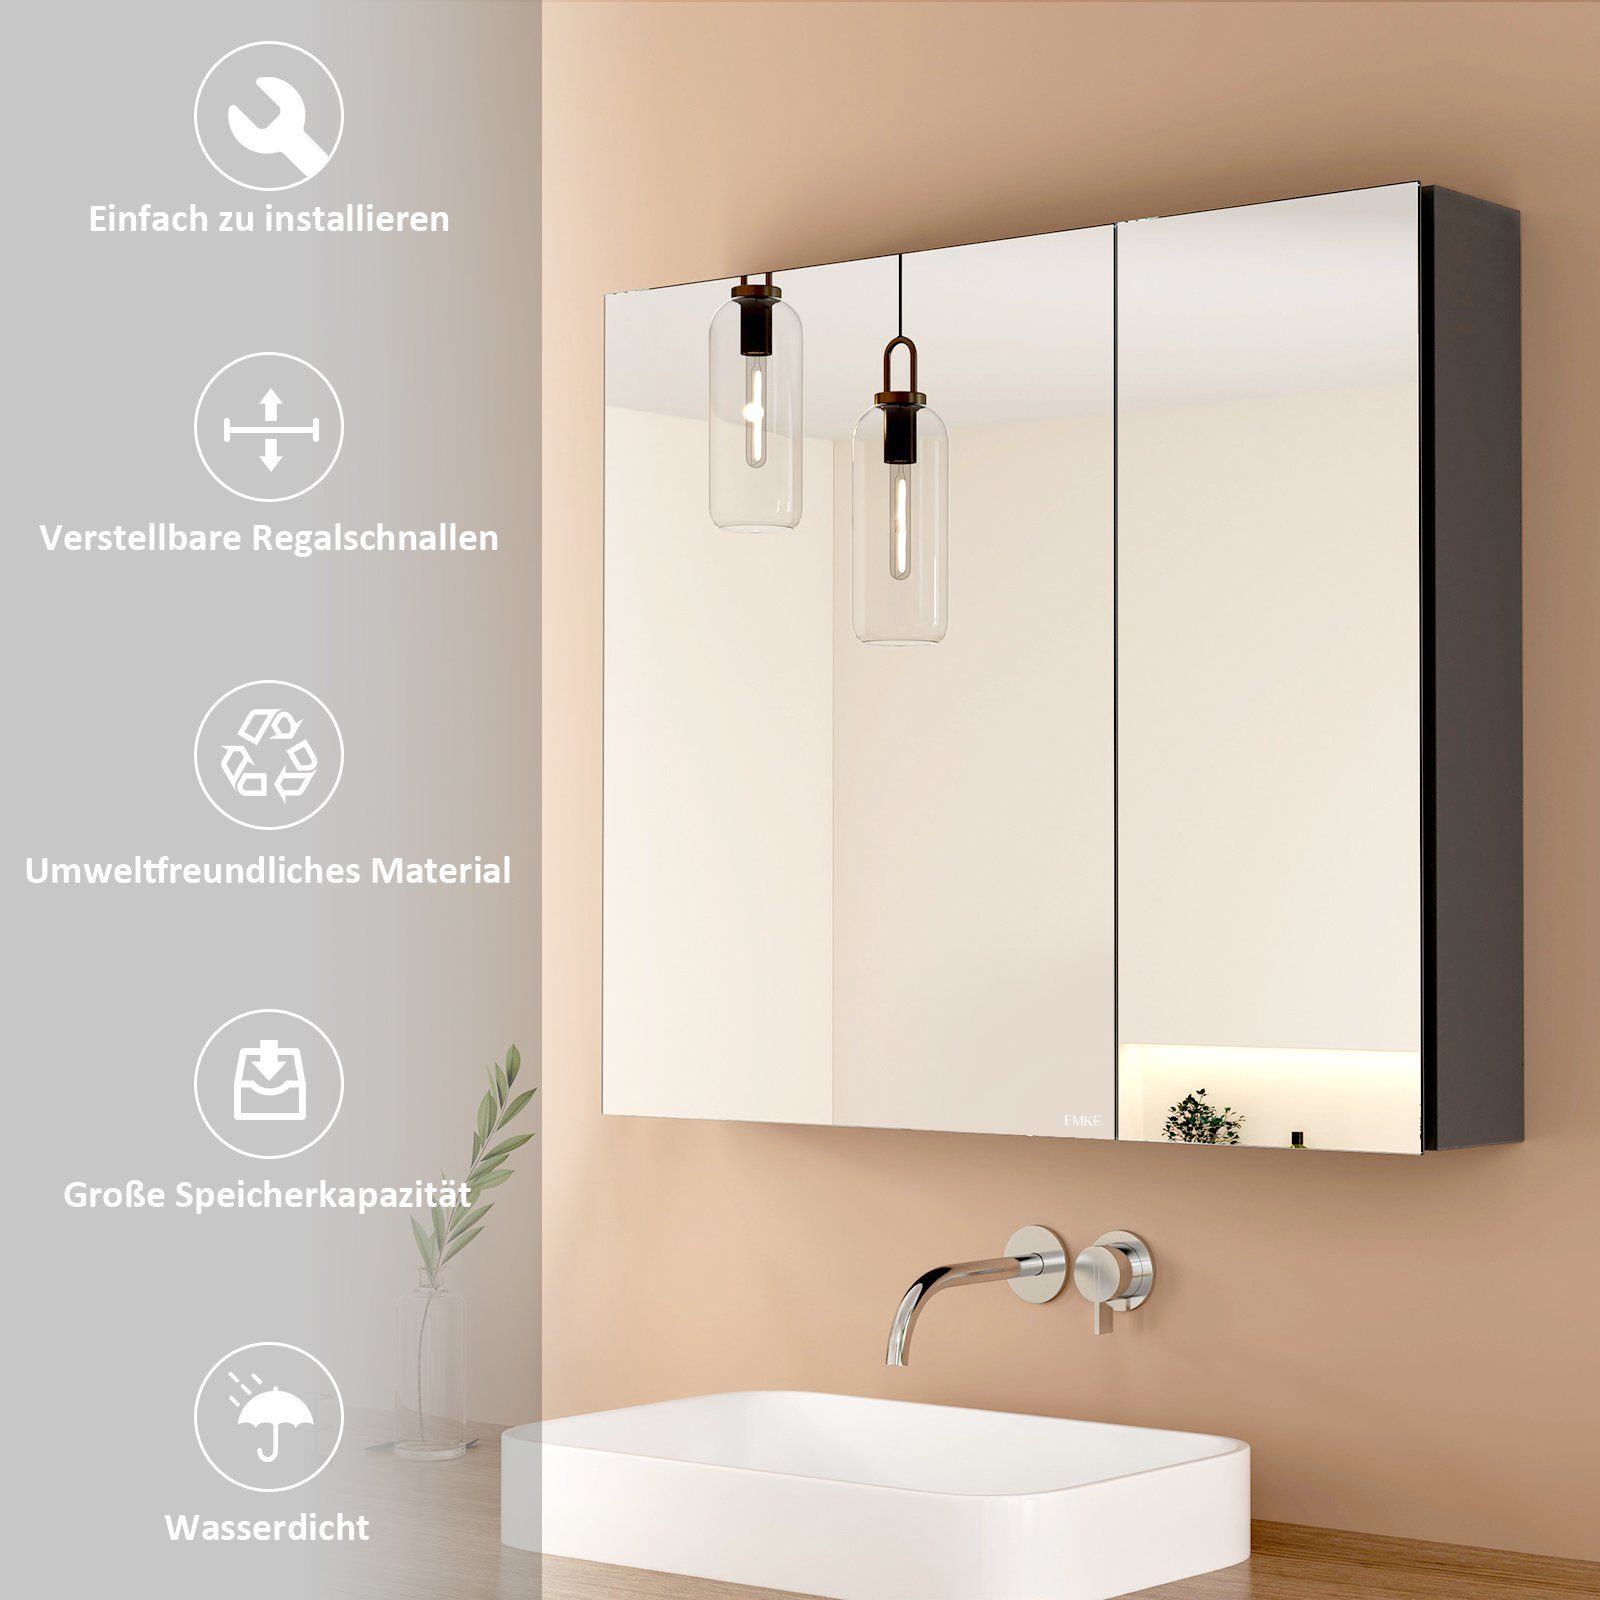 zweitüriger Spiegelschrank mit spiegelschrank Badezimmerspiegelschrank EMKE Trennwand Badspiegelschrank grau EMKE Verstellbare doppelseitigem(MC7)